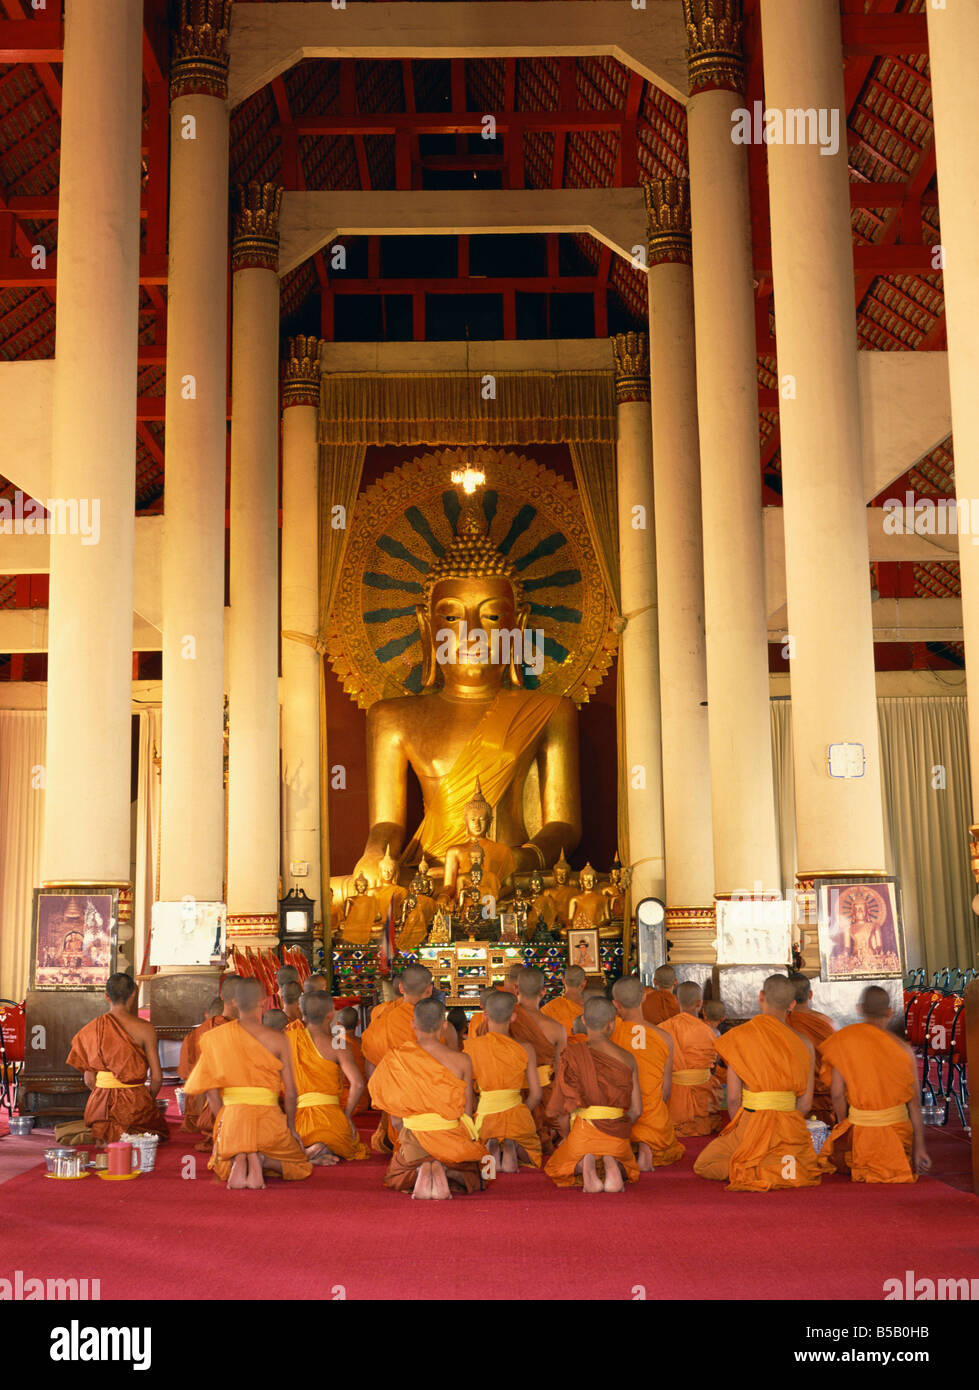 Moines en robe safran s'agenouiller devant une statue de Bouddha dans le temple de Wat louant à Chiang Mai Thaïlande Asie C Boonsom Banque D'Images